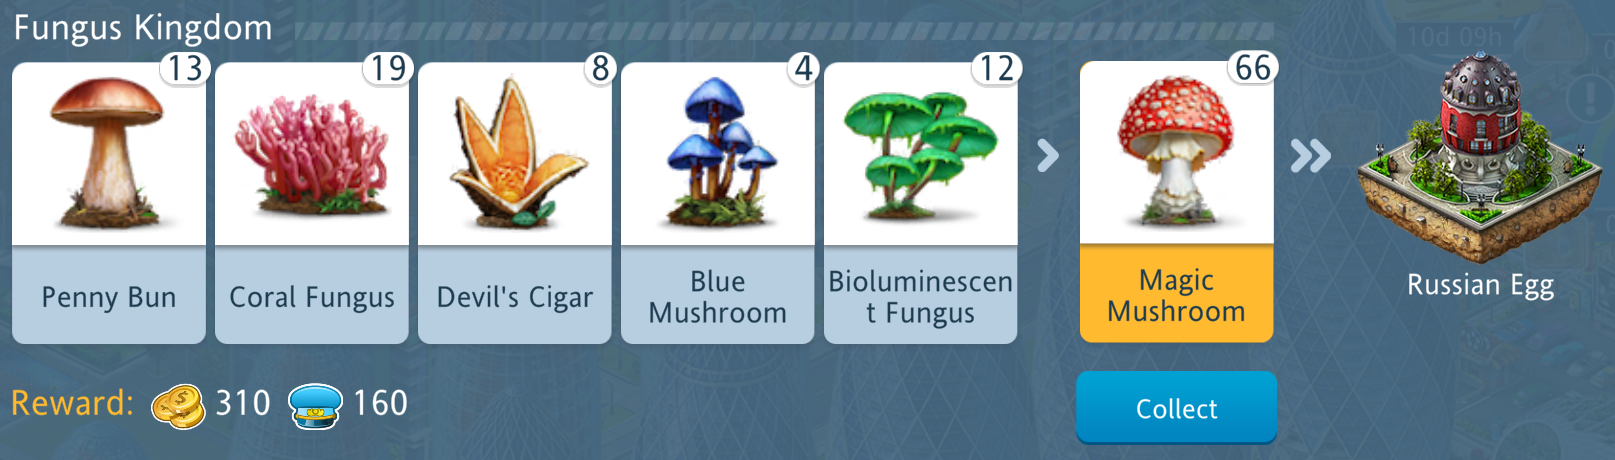 fungus kingdom.png